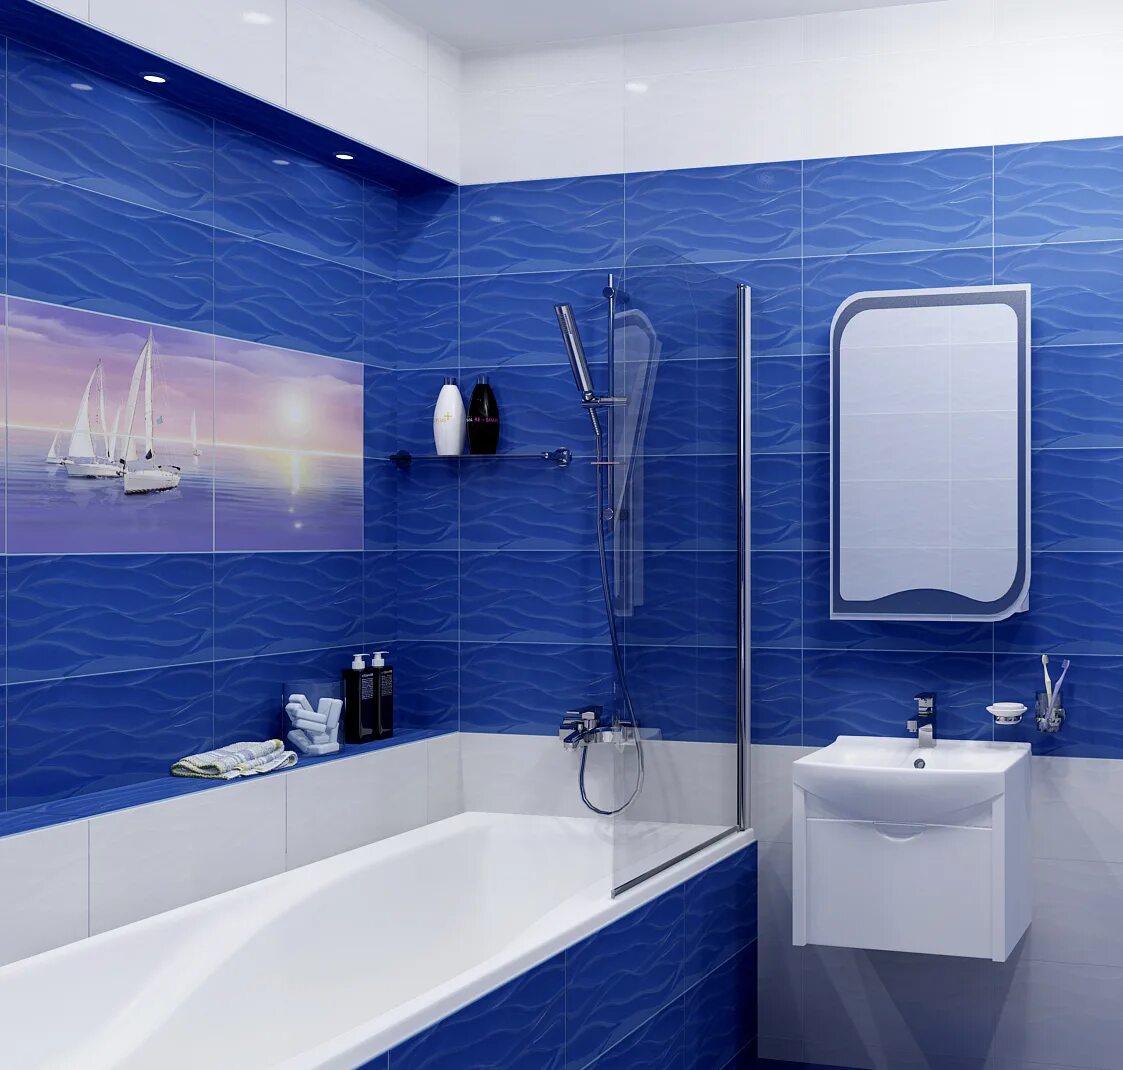 Панели в ванной отзывы. Синяя ванная комната. Ванная в синем цвете. Плитка для ванной комнаты синяя. Плитка в ванную синяя.